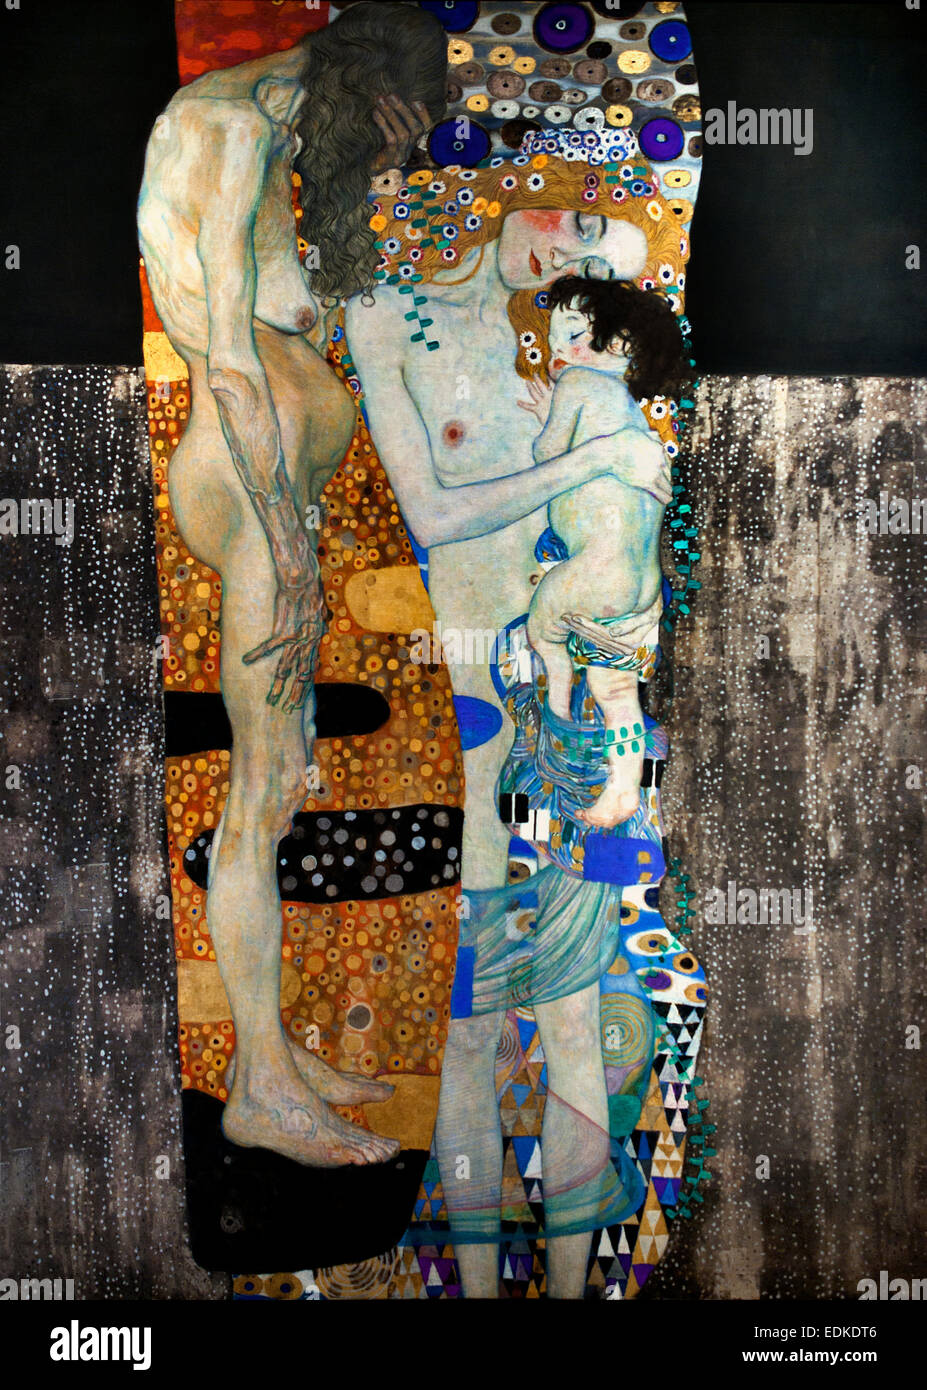 Sterben Drei Lebensalter der Frau - die drei Altersgruppen der Frau 1905 Gustav Klimt 1862-1918 österreichischen symbolistischen Maler der Wiener Secession Bewegung Österreich Stockfoto